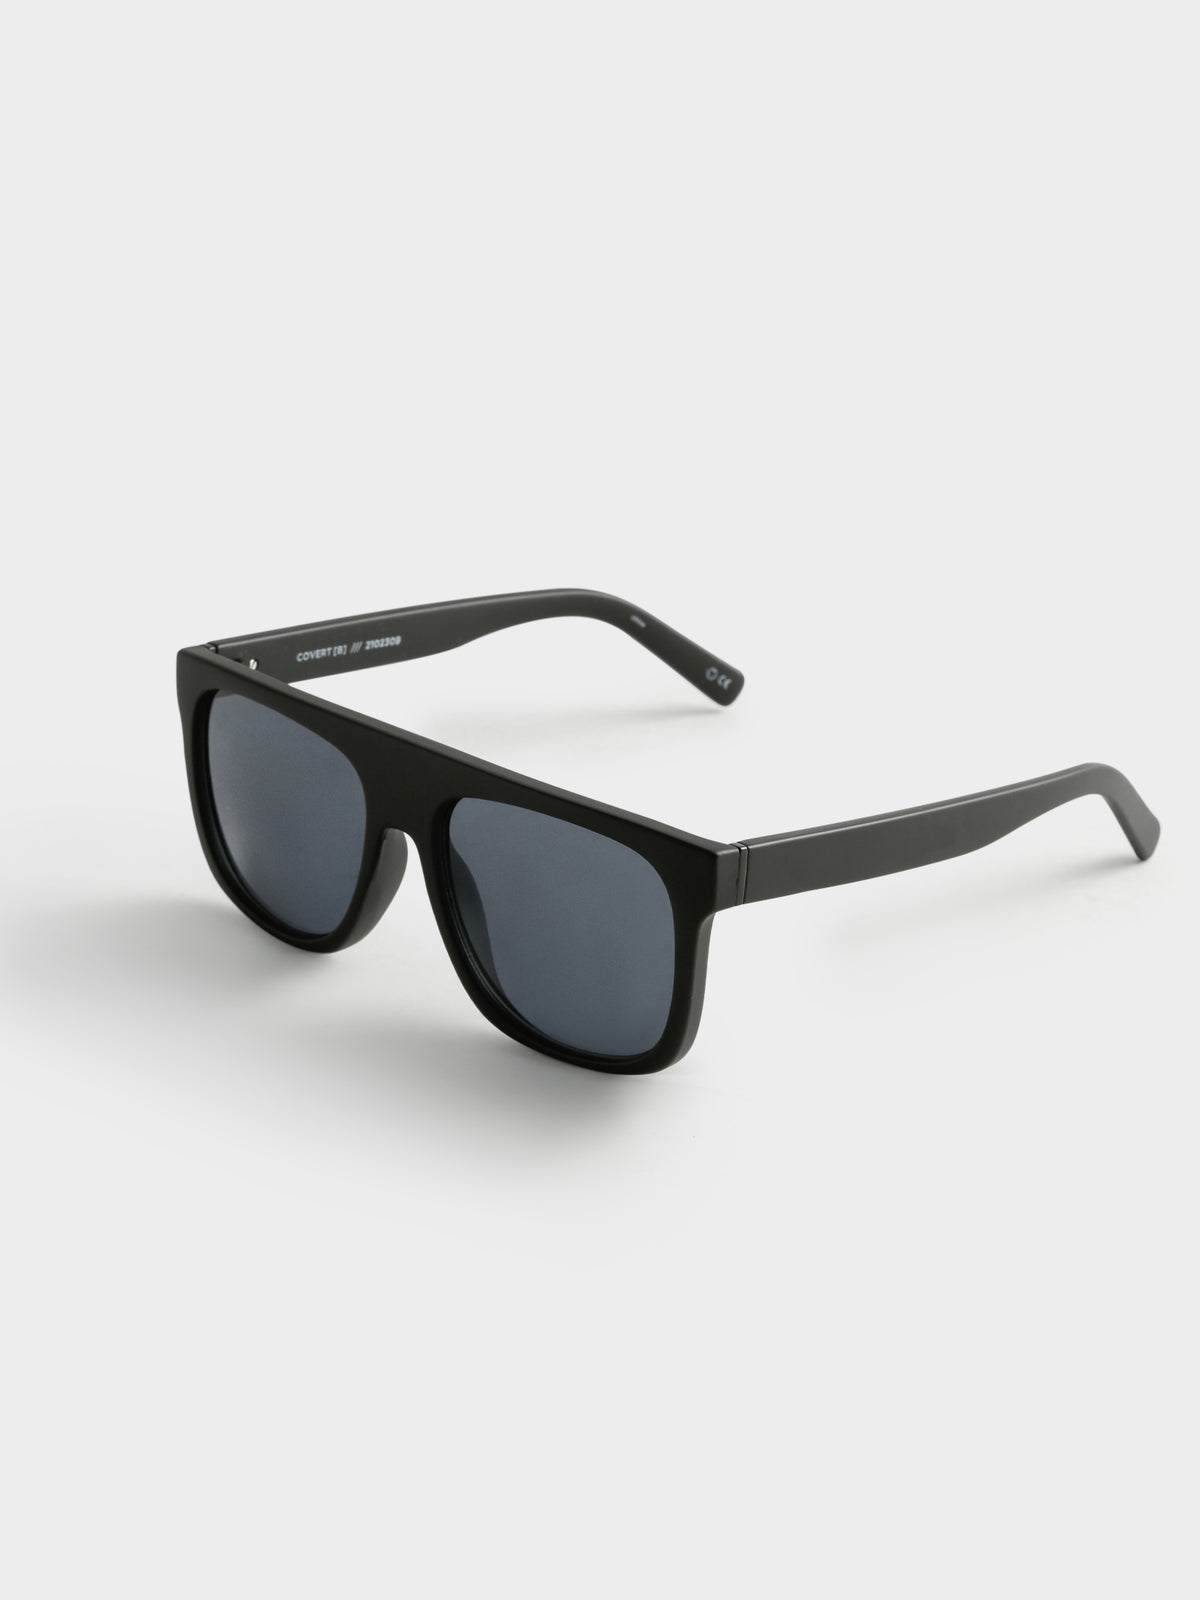 Covert Rectangle Sunglasses in Black